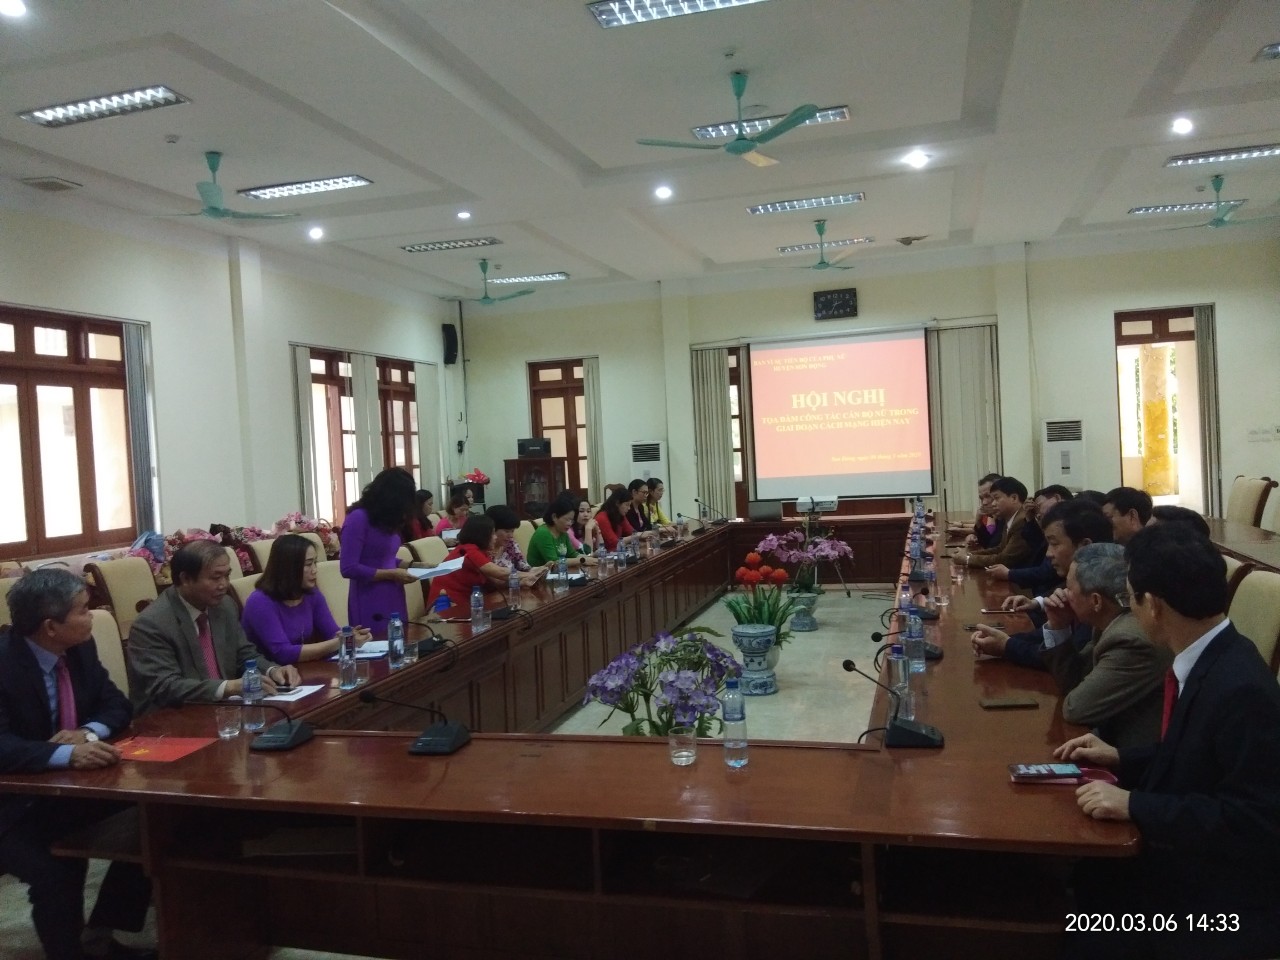 Huyện Sơn Động tổ chức Hội nghị tọa đàm công tác  cán bộ nữ trong giai đoạn cách mạng hiện nay